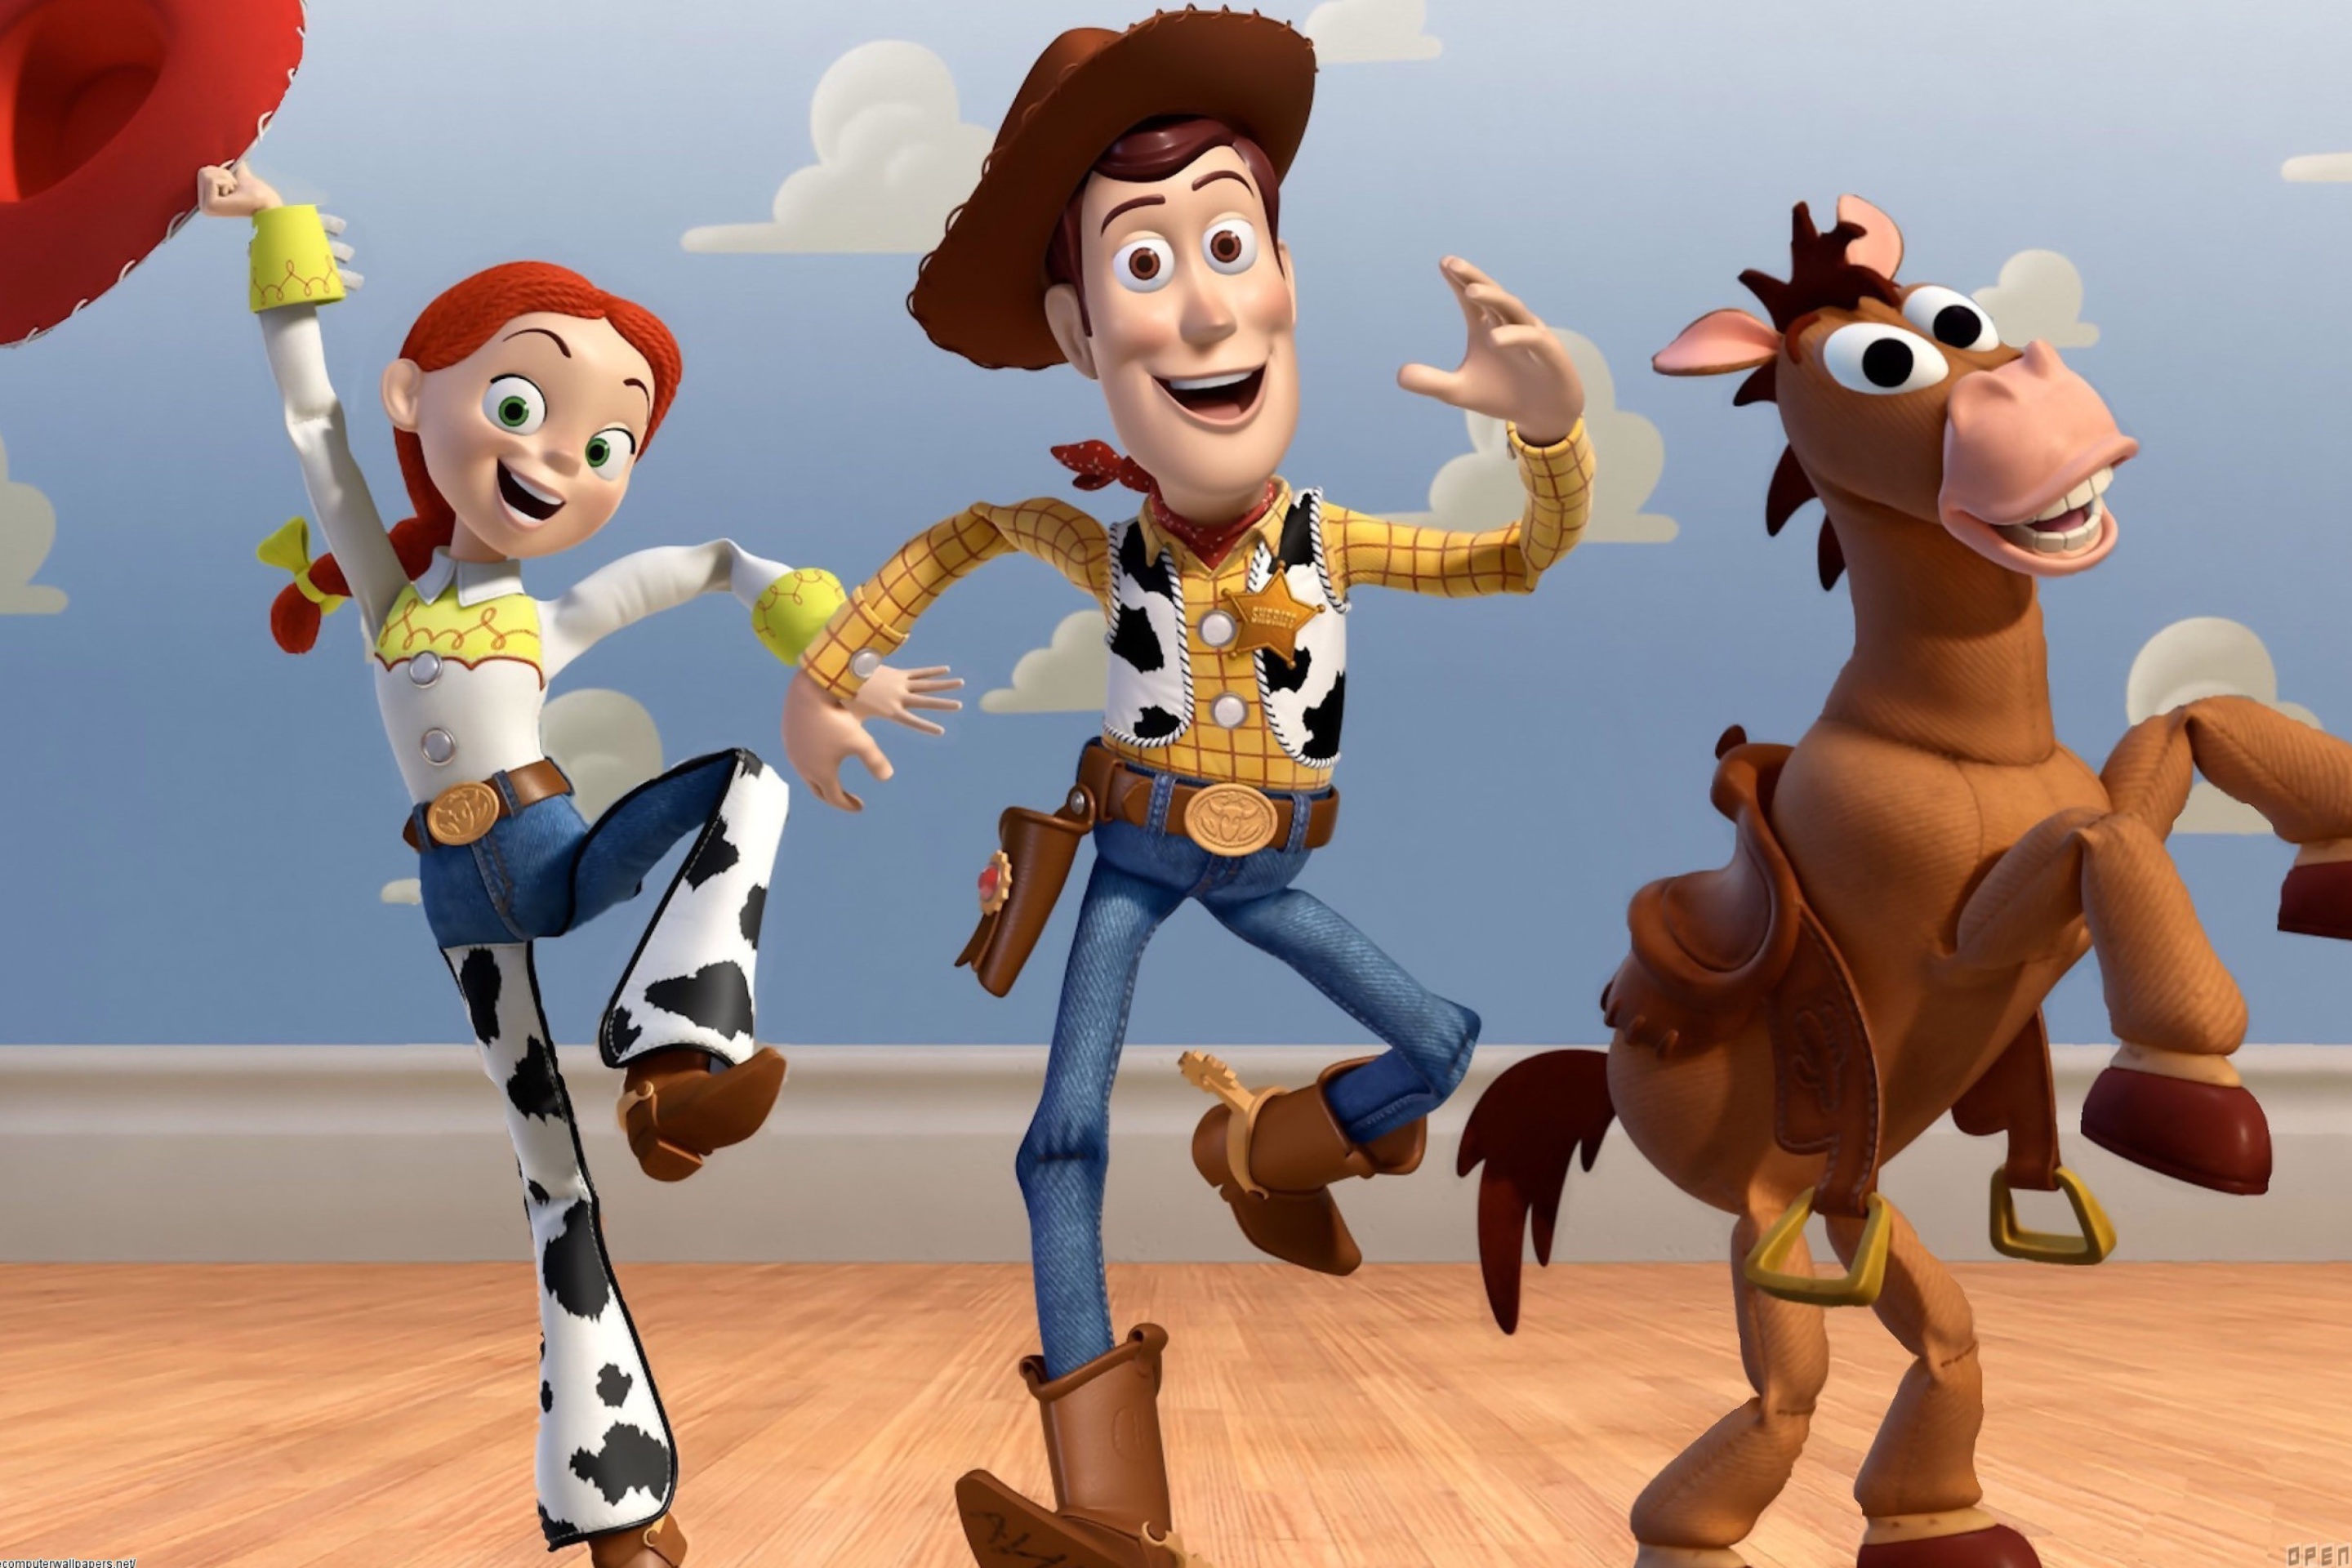 Woody toy story. Вуди и Джесси (). Вуди и Джесси любовь. История игрушек 3 Джесси и Вуди. Toy story 2 Woody.